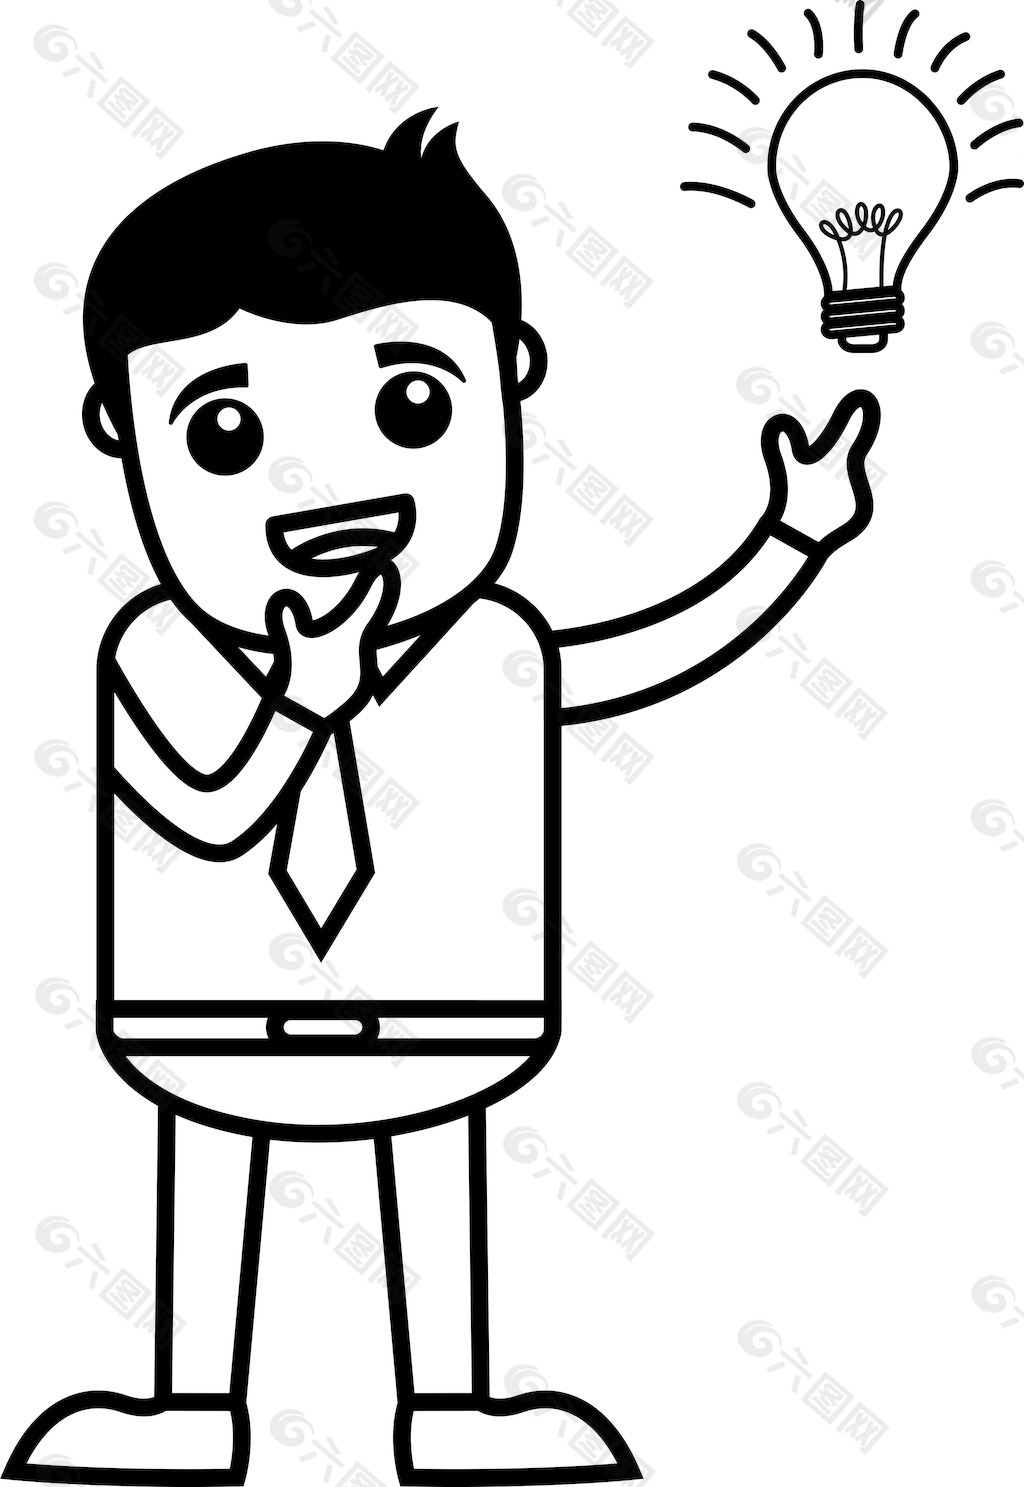 灯泡点亮的想法-商业卡通人物矢量图